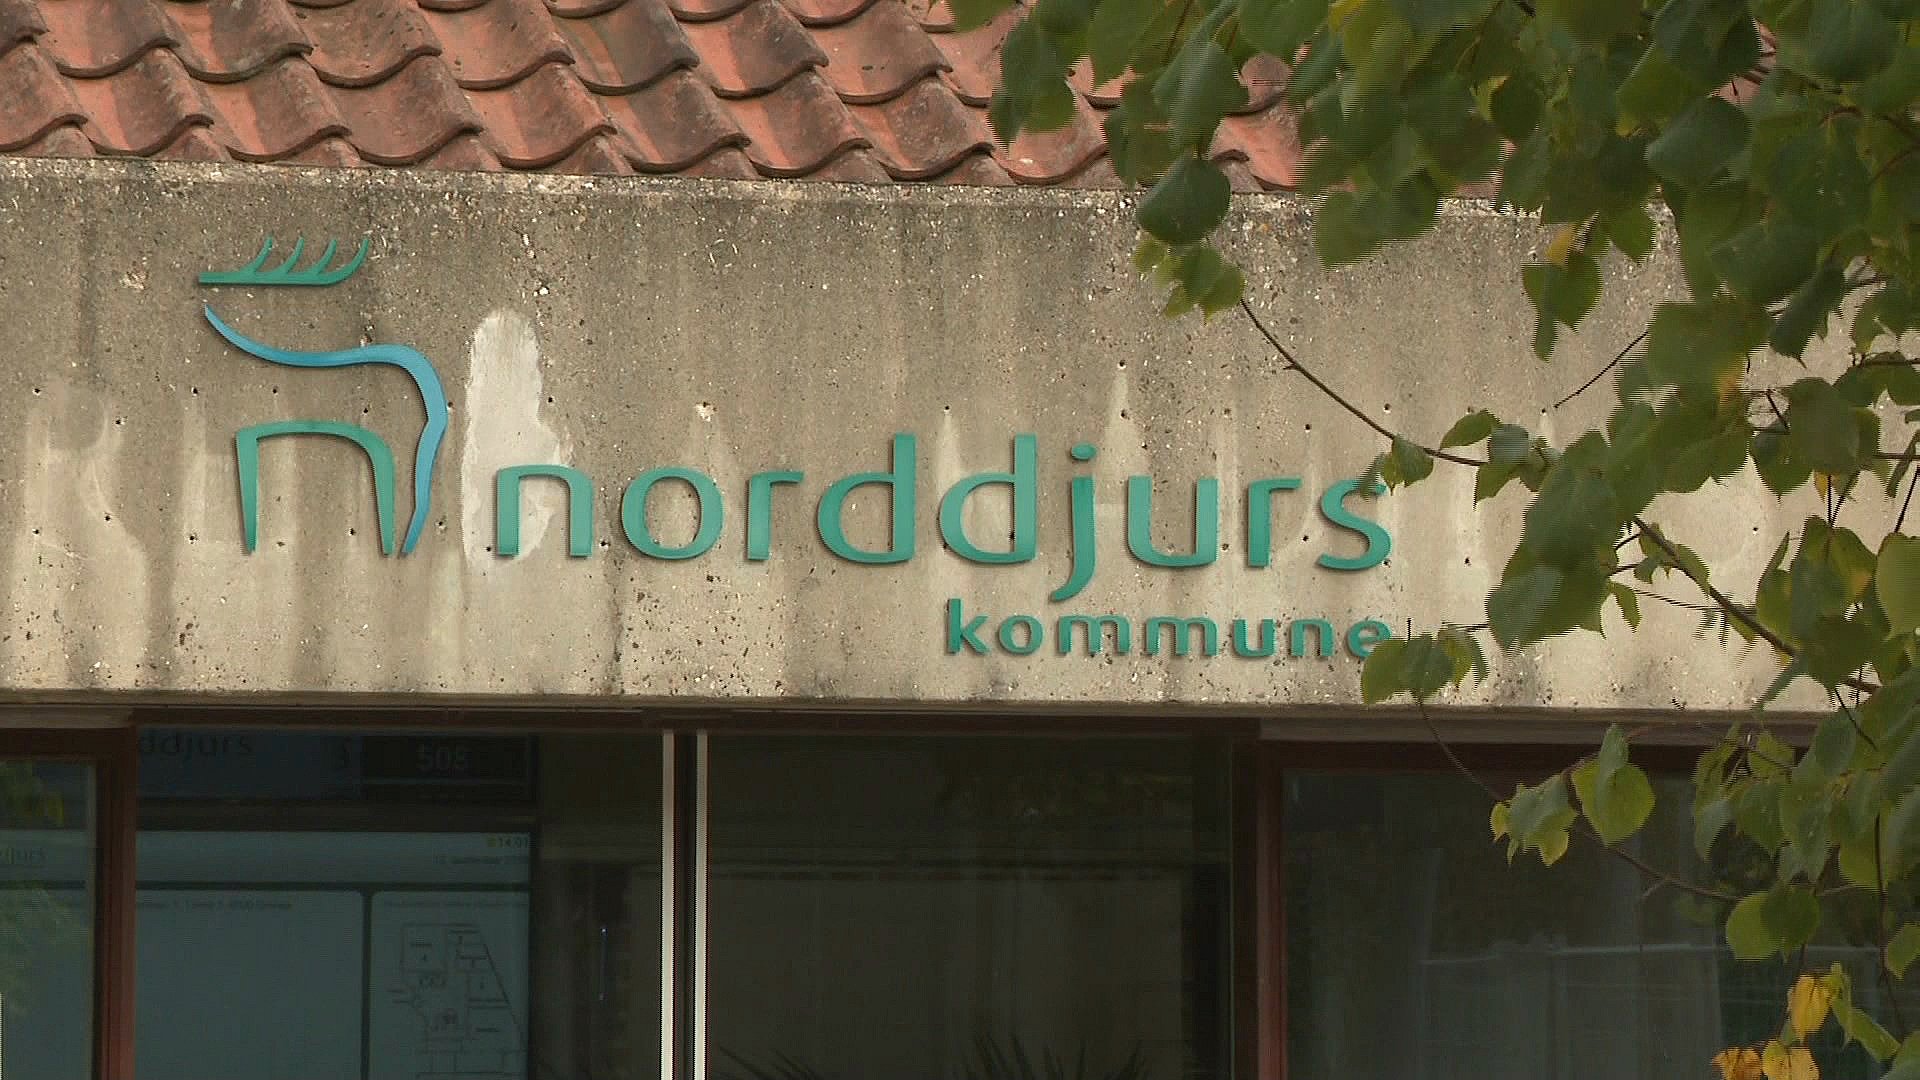 Tekstforfatter blåhval Frisør Her er den nye kommunalbestyrelse i Norddjurs Kommune | TV2 Østjylland